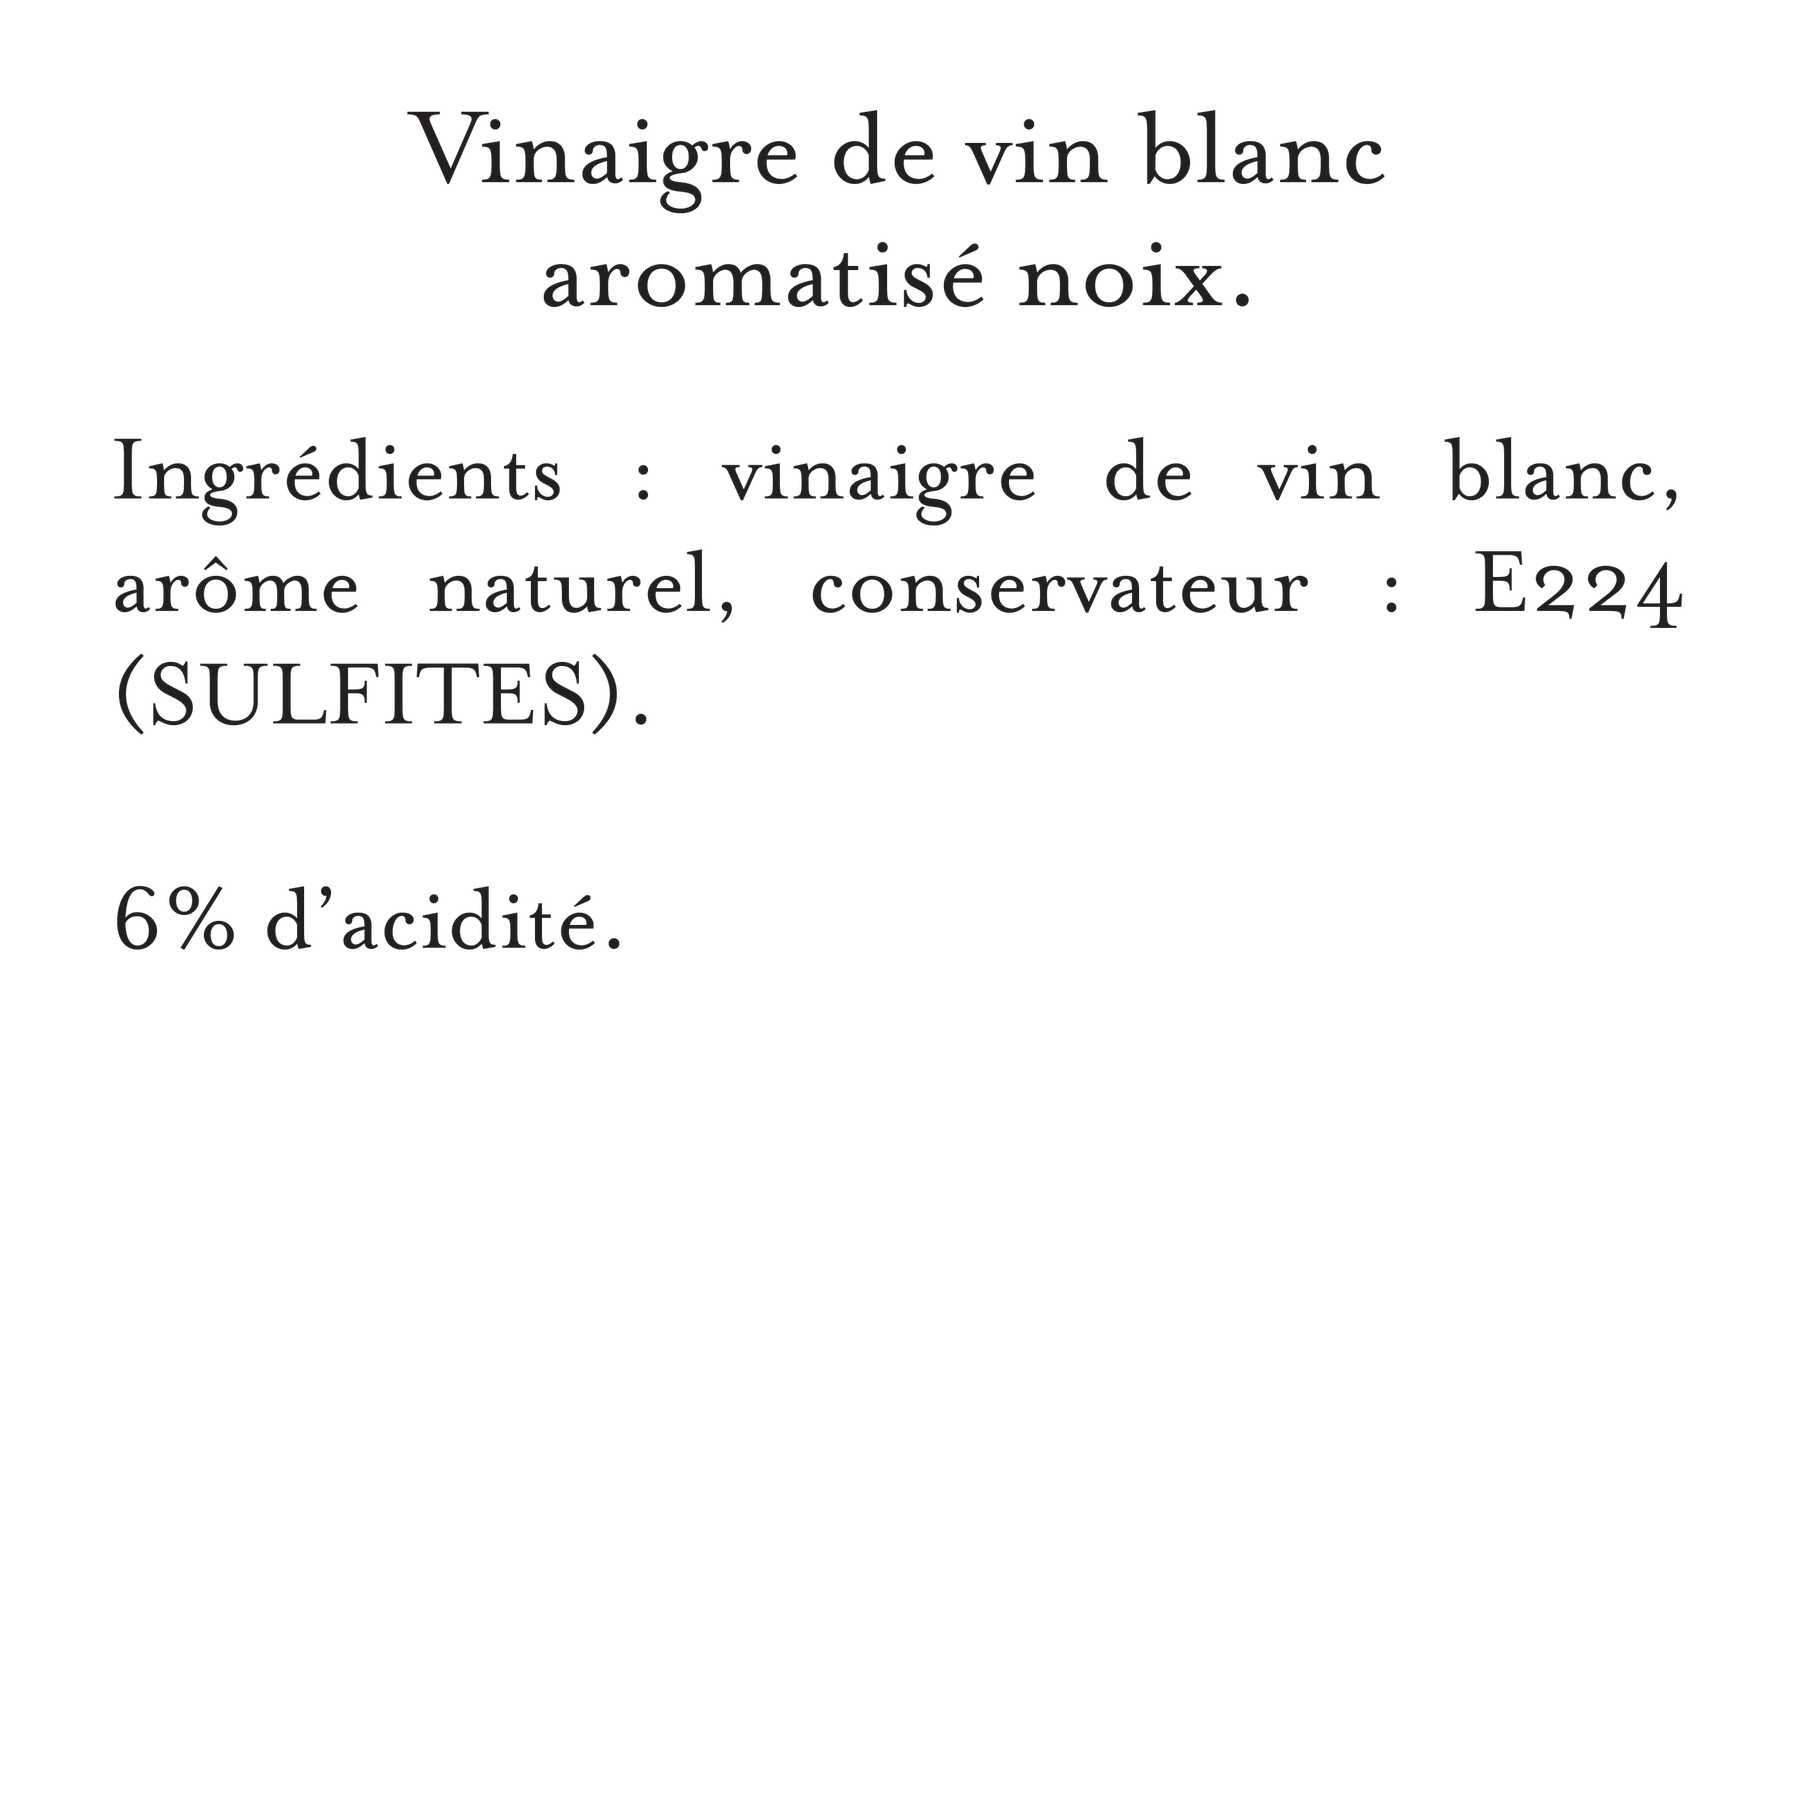 Maille - Vinaigre de Vin Blanc Aromatisé Noix 50 cl, description